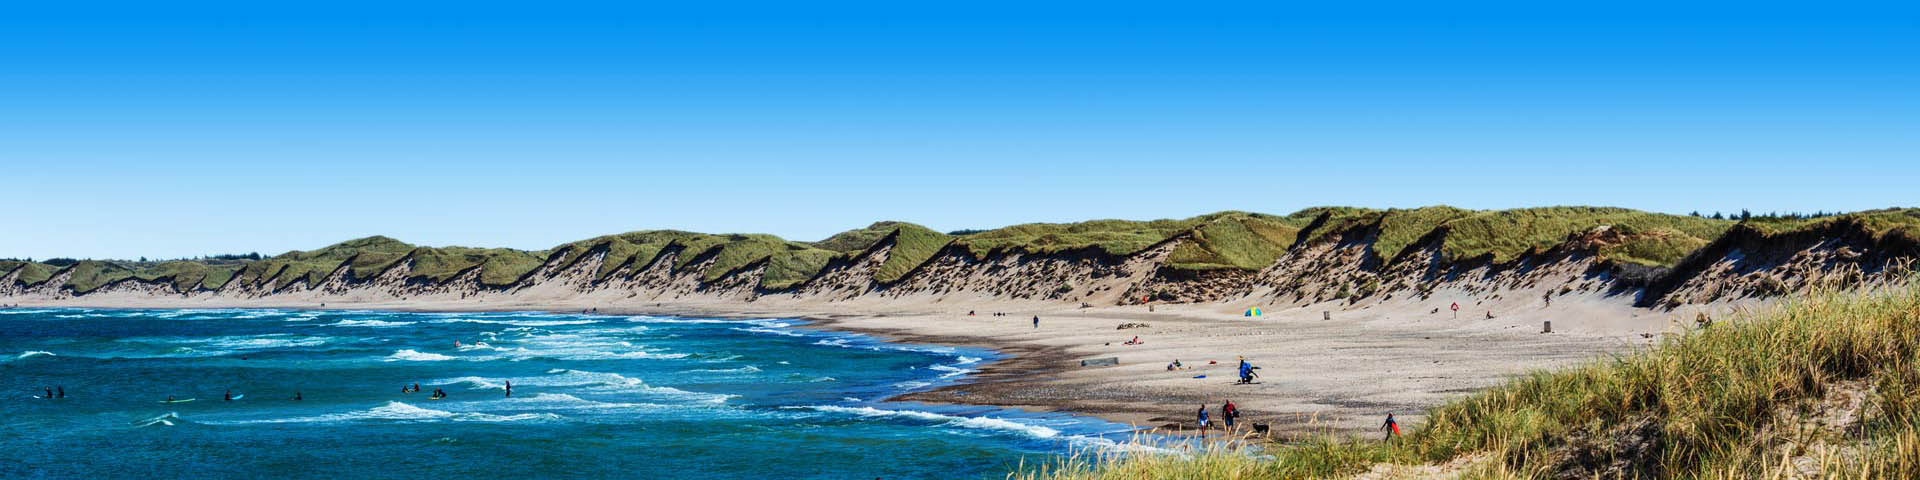 Deens landschap met blauw water en groene duinen